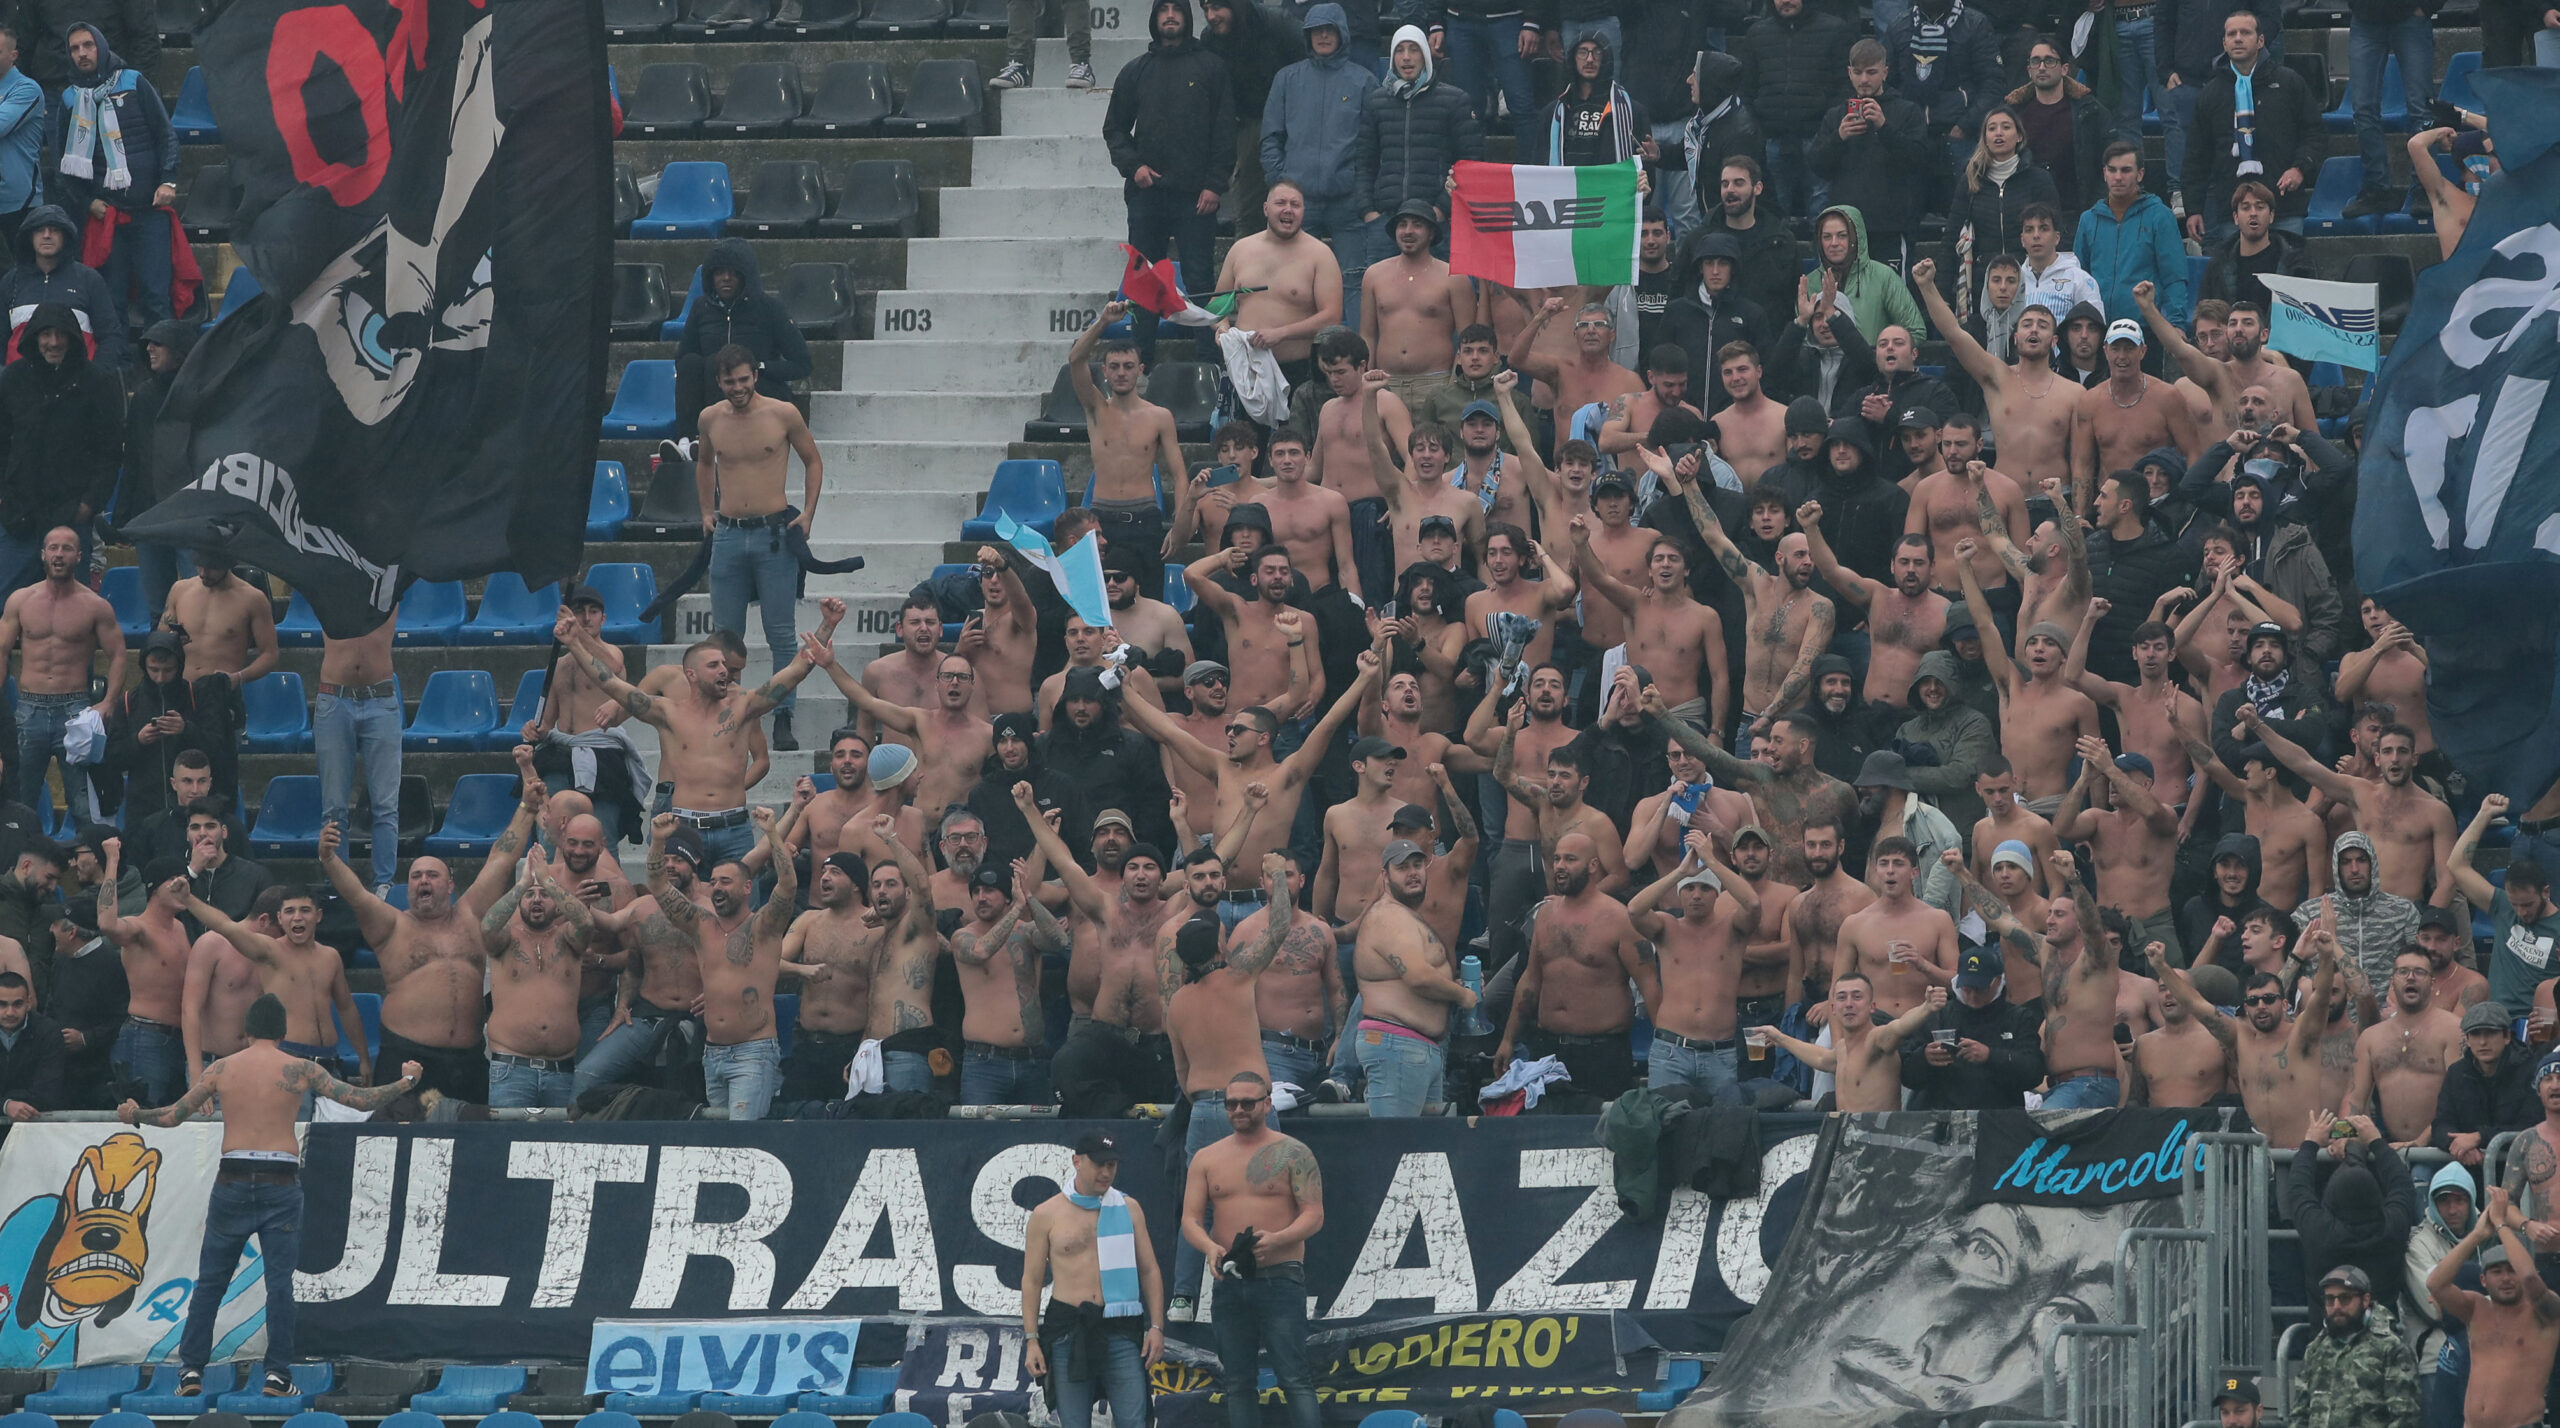 Lazio Fans